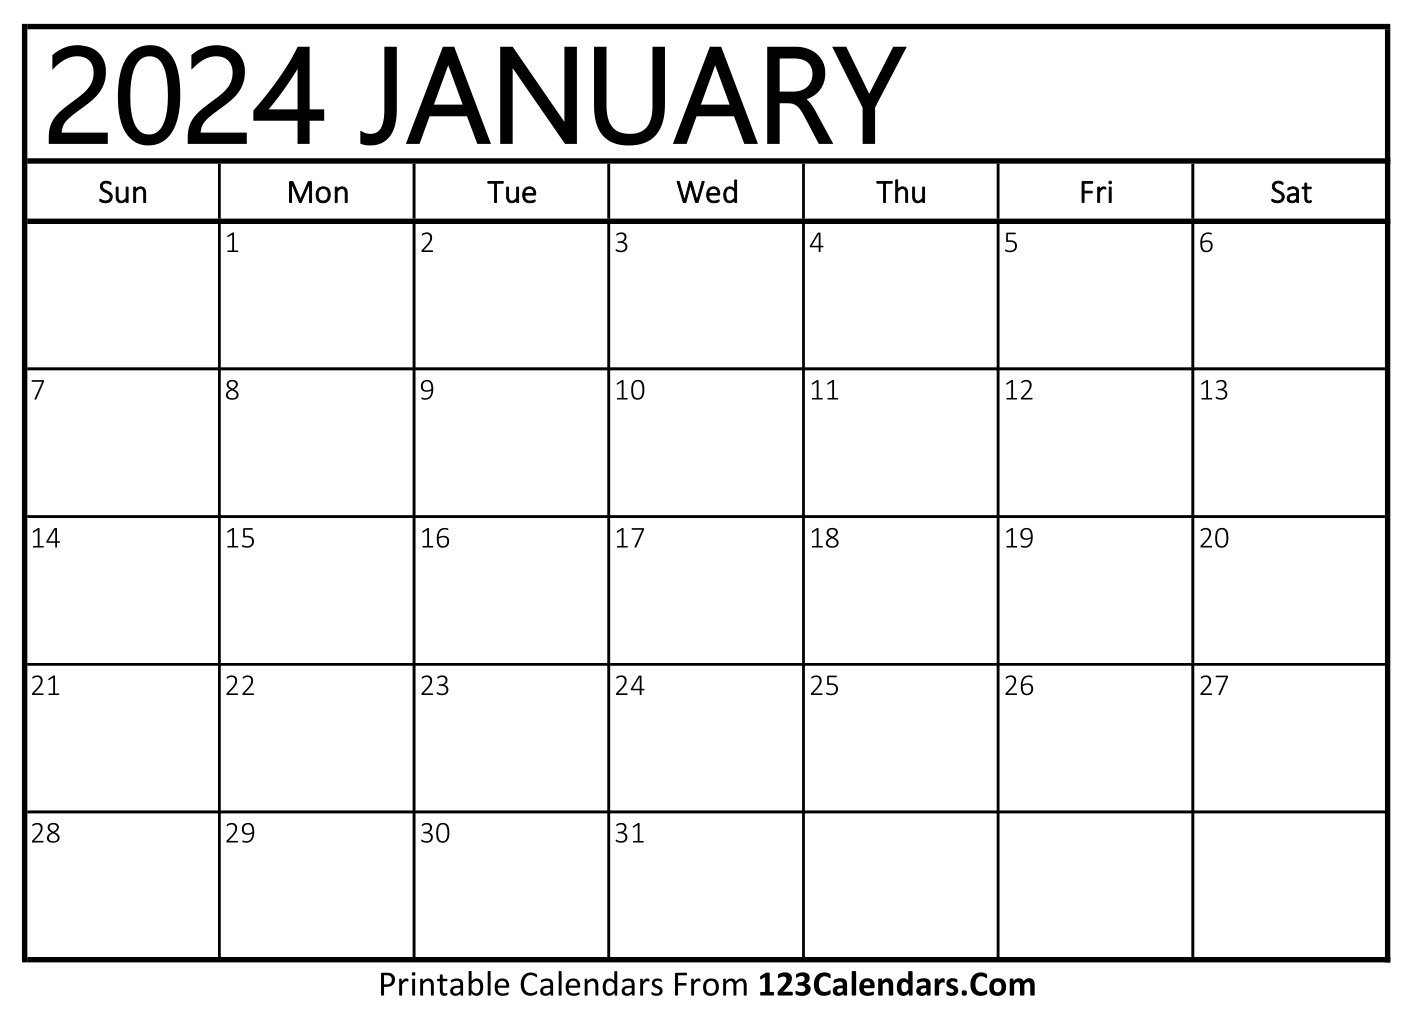 2024 Printable Calendar No Download Google Chrome February 2024 Calendar